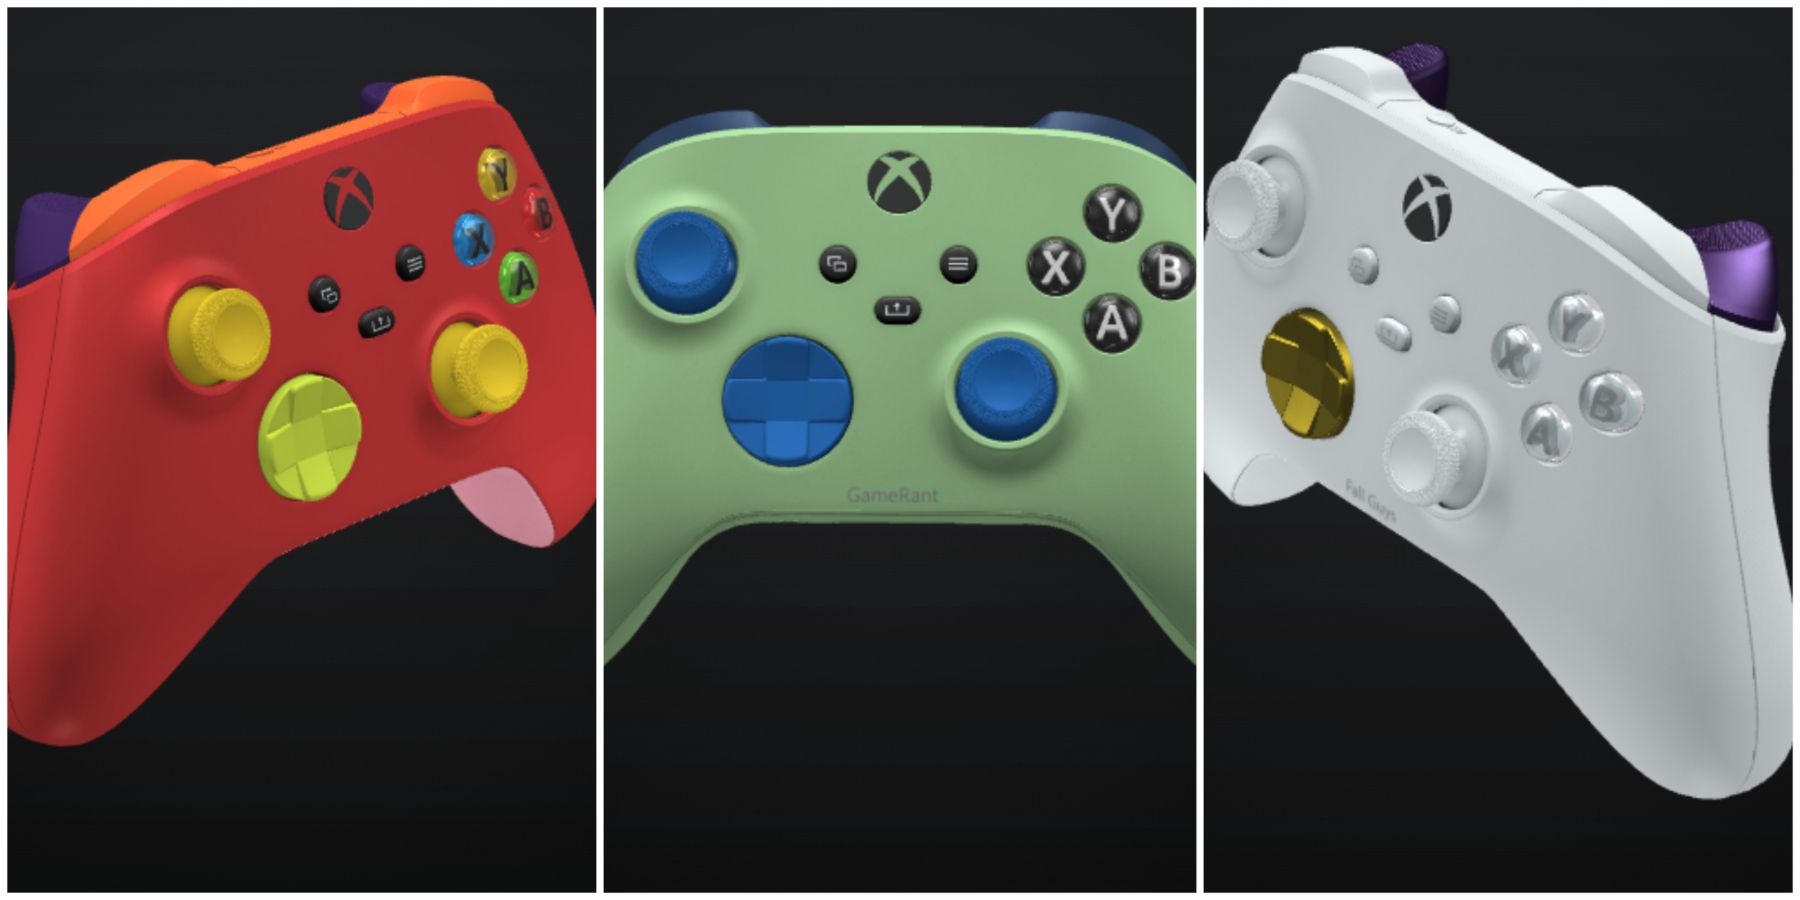 Избранное изображение нестандартных контроллеров, созданных в Xbox Design Lab.